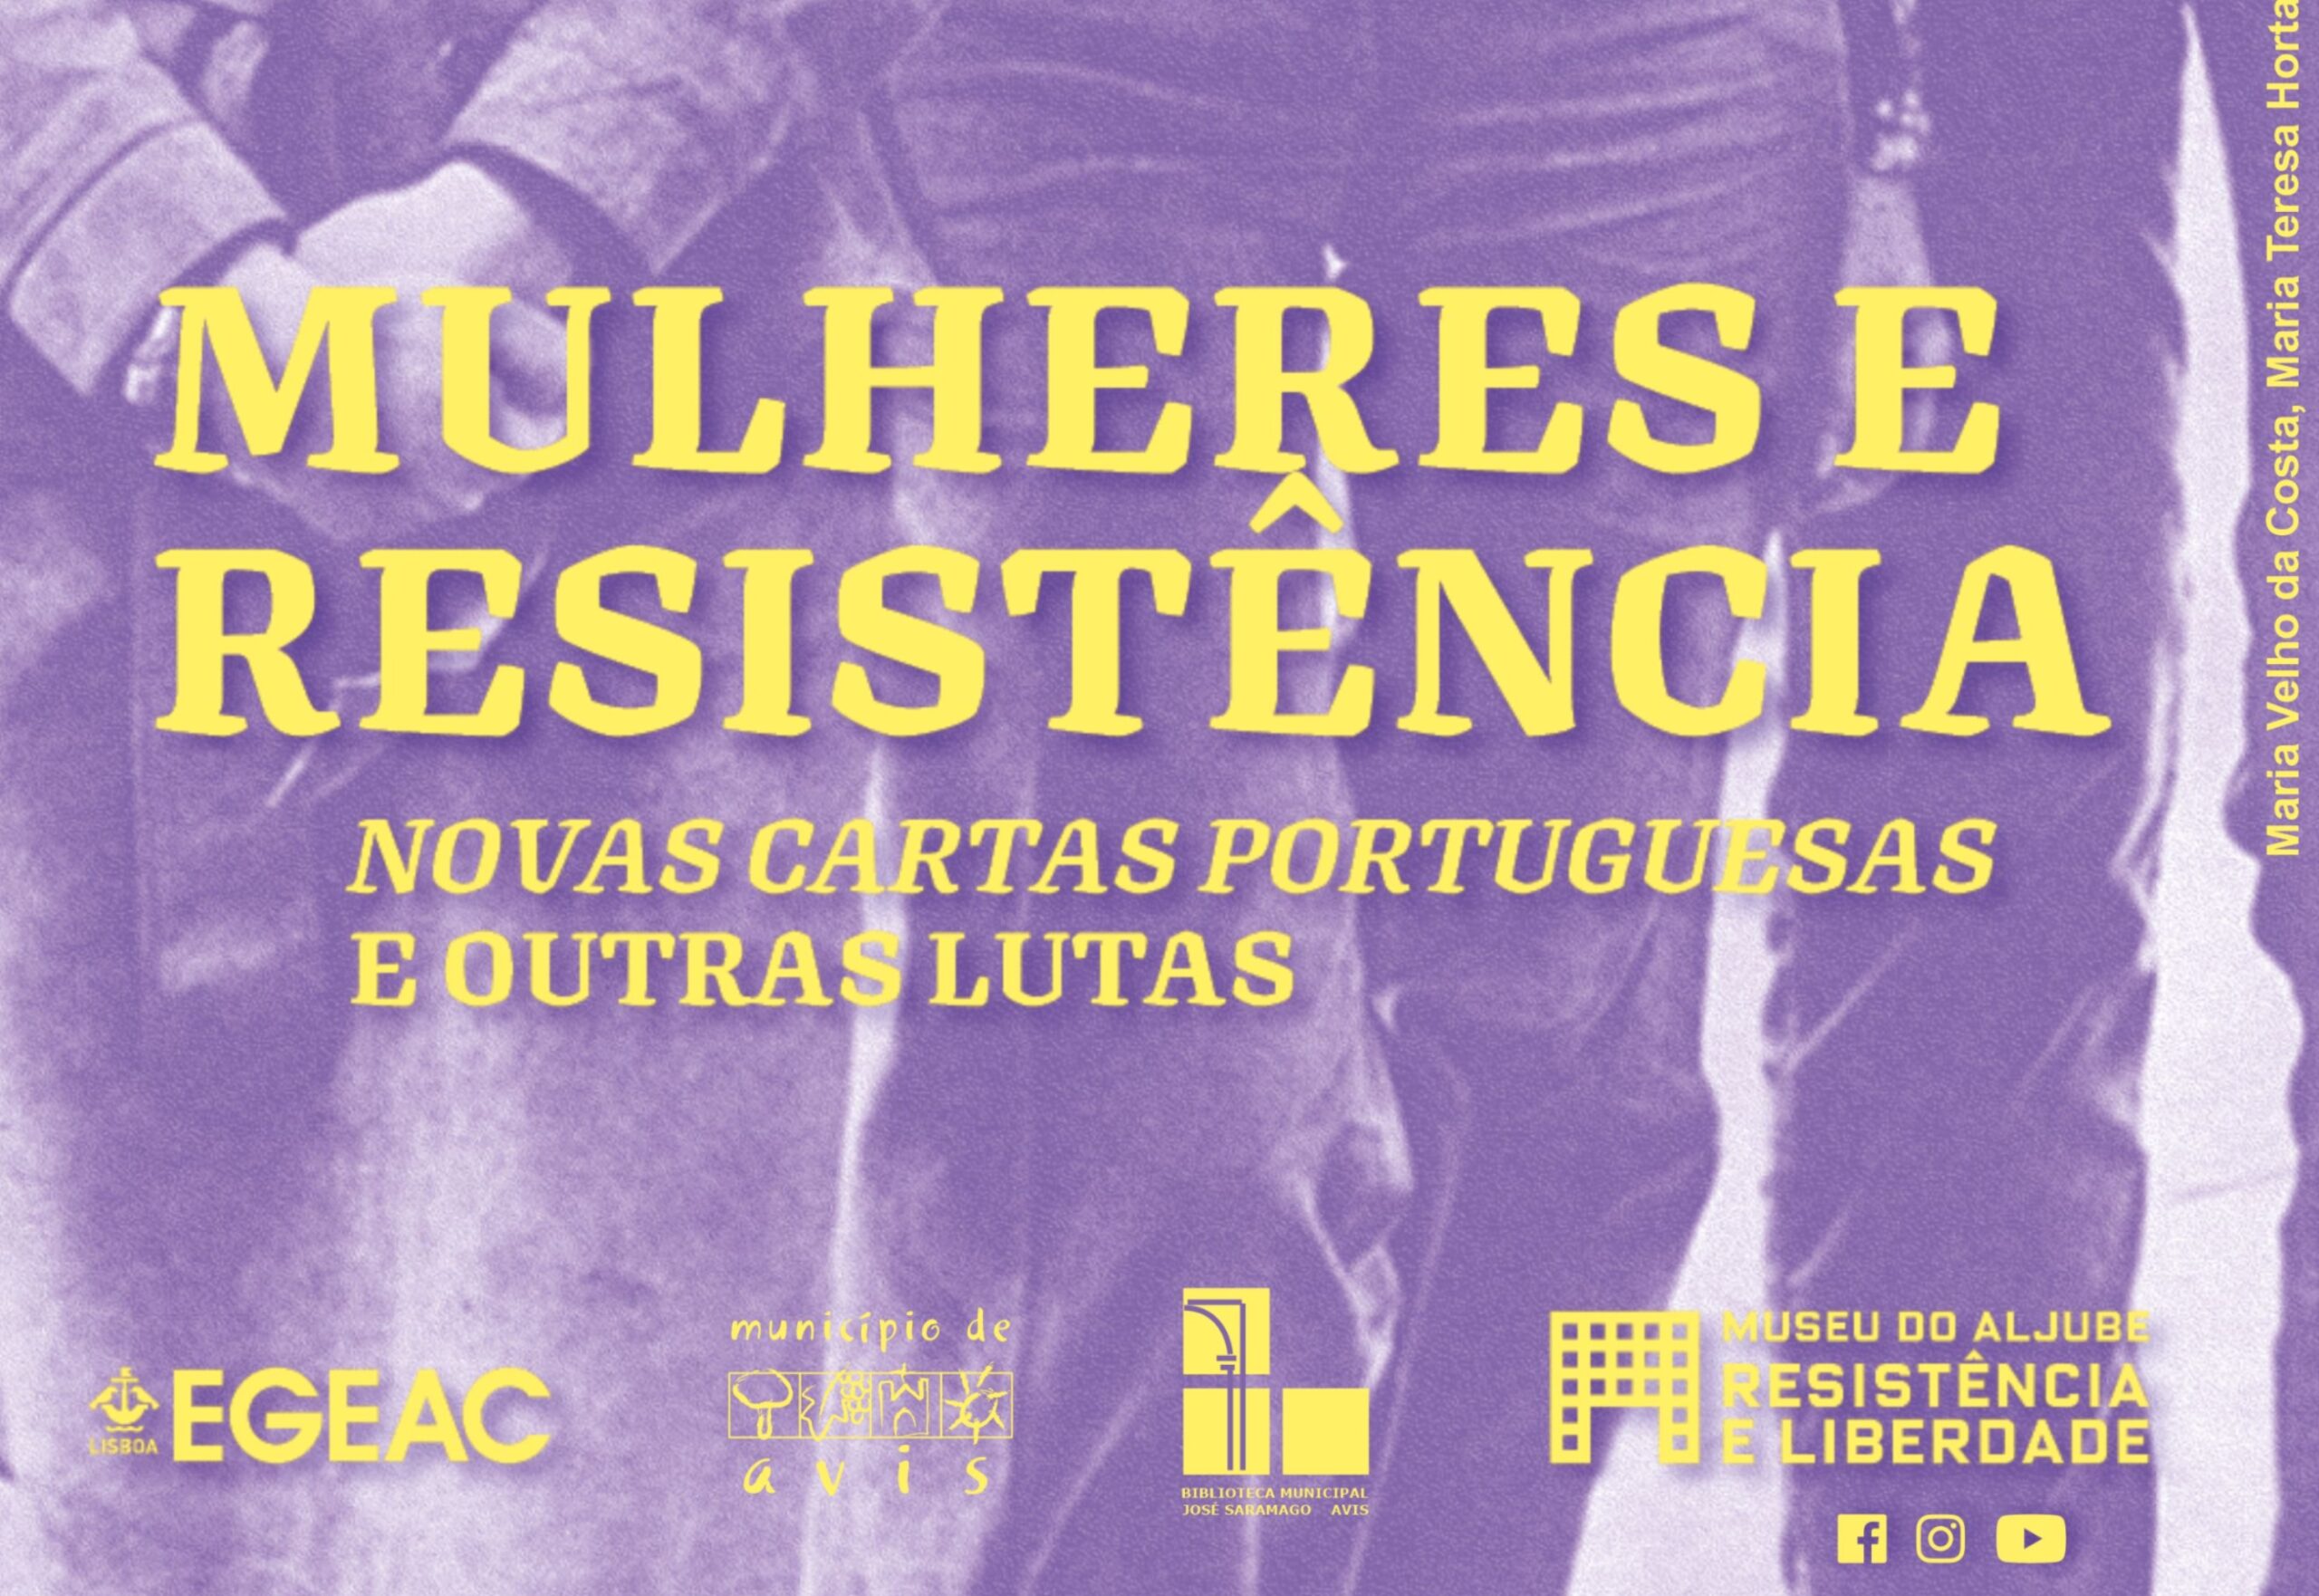 Exposição “Mulheres e Resistência – Novas Cartas Portuguesas e outras lutas”